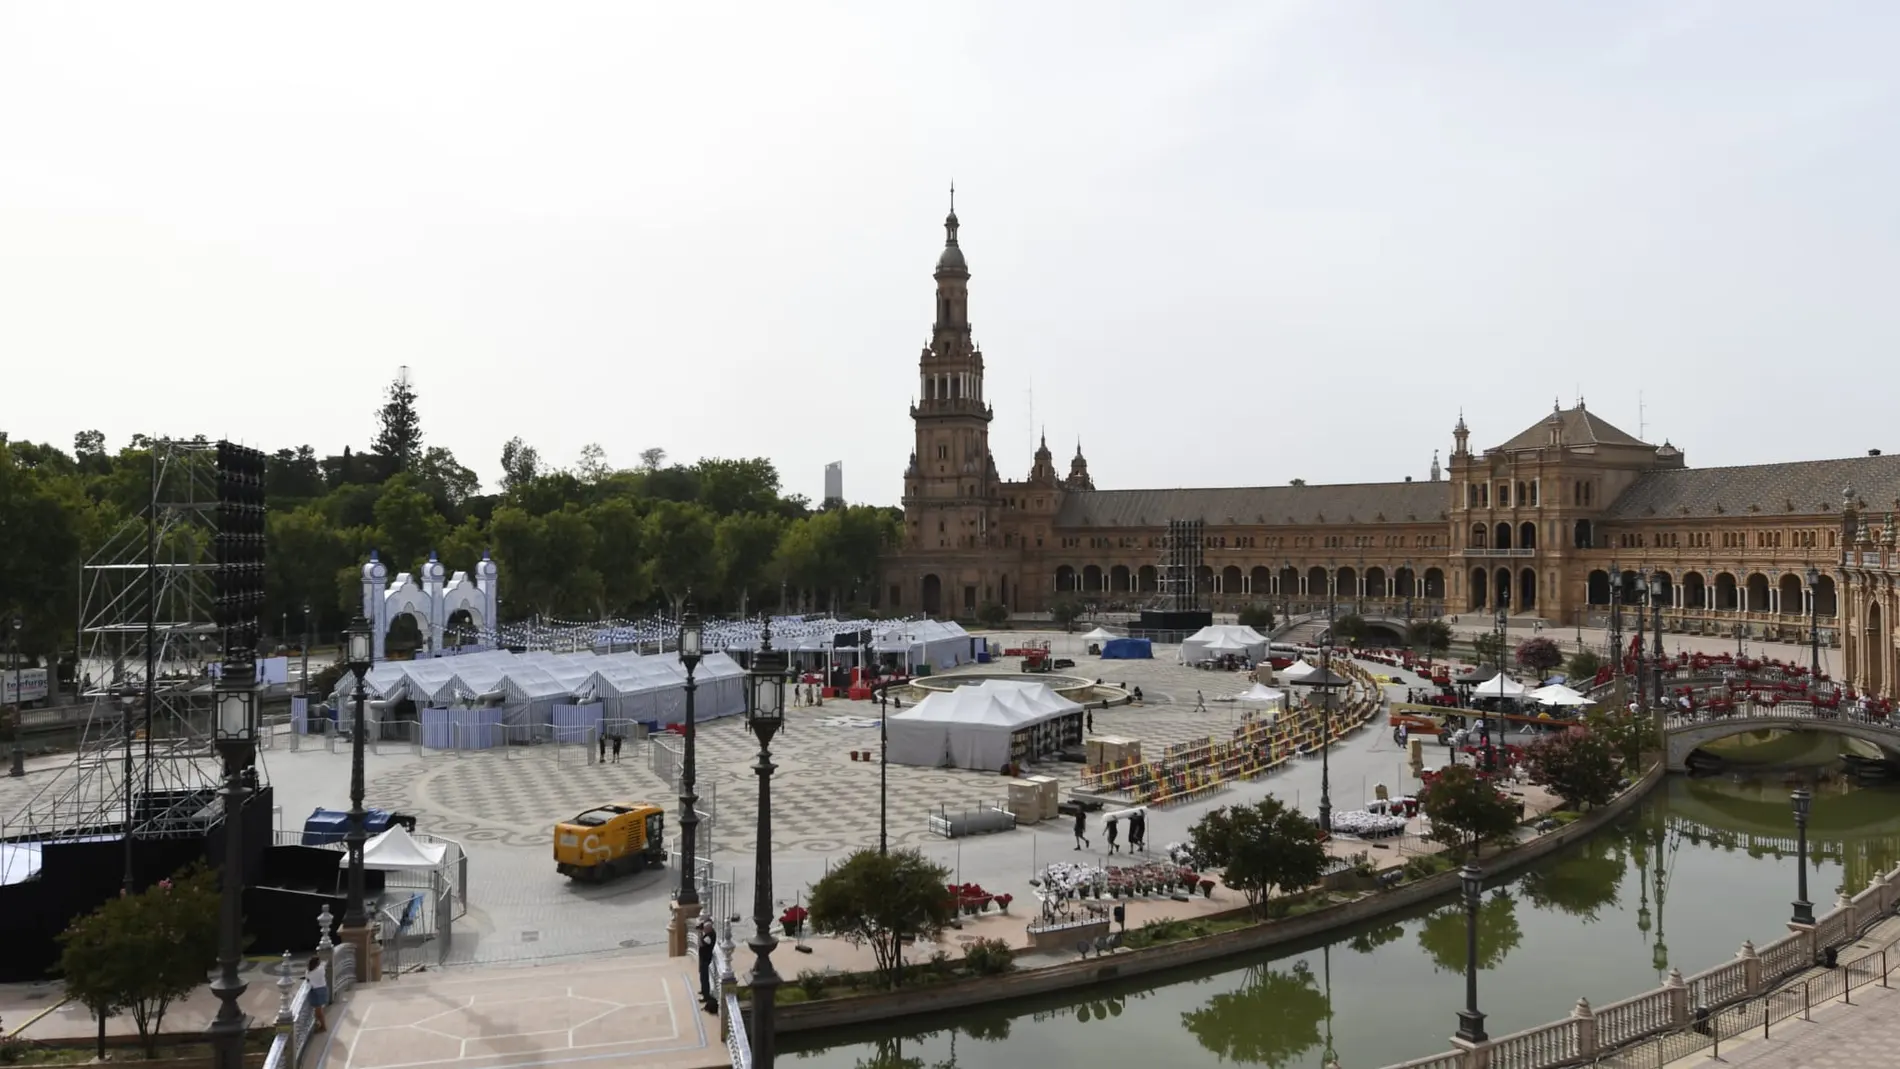 Panorámica de los preparativos de la firma francesa Dior en la Plaza de España de Sevilla